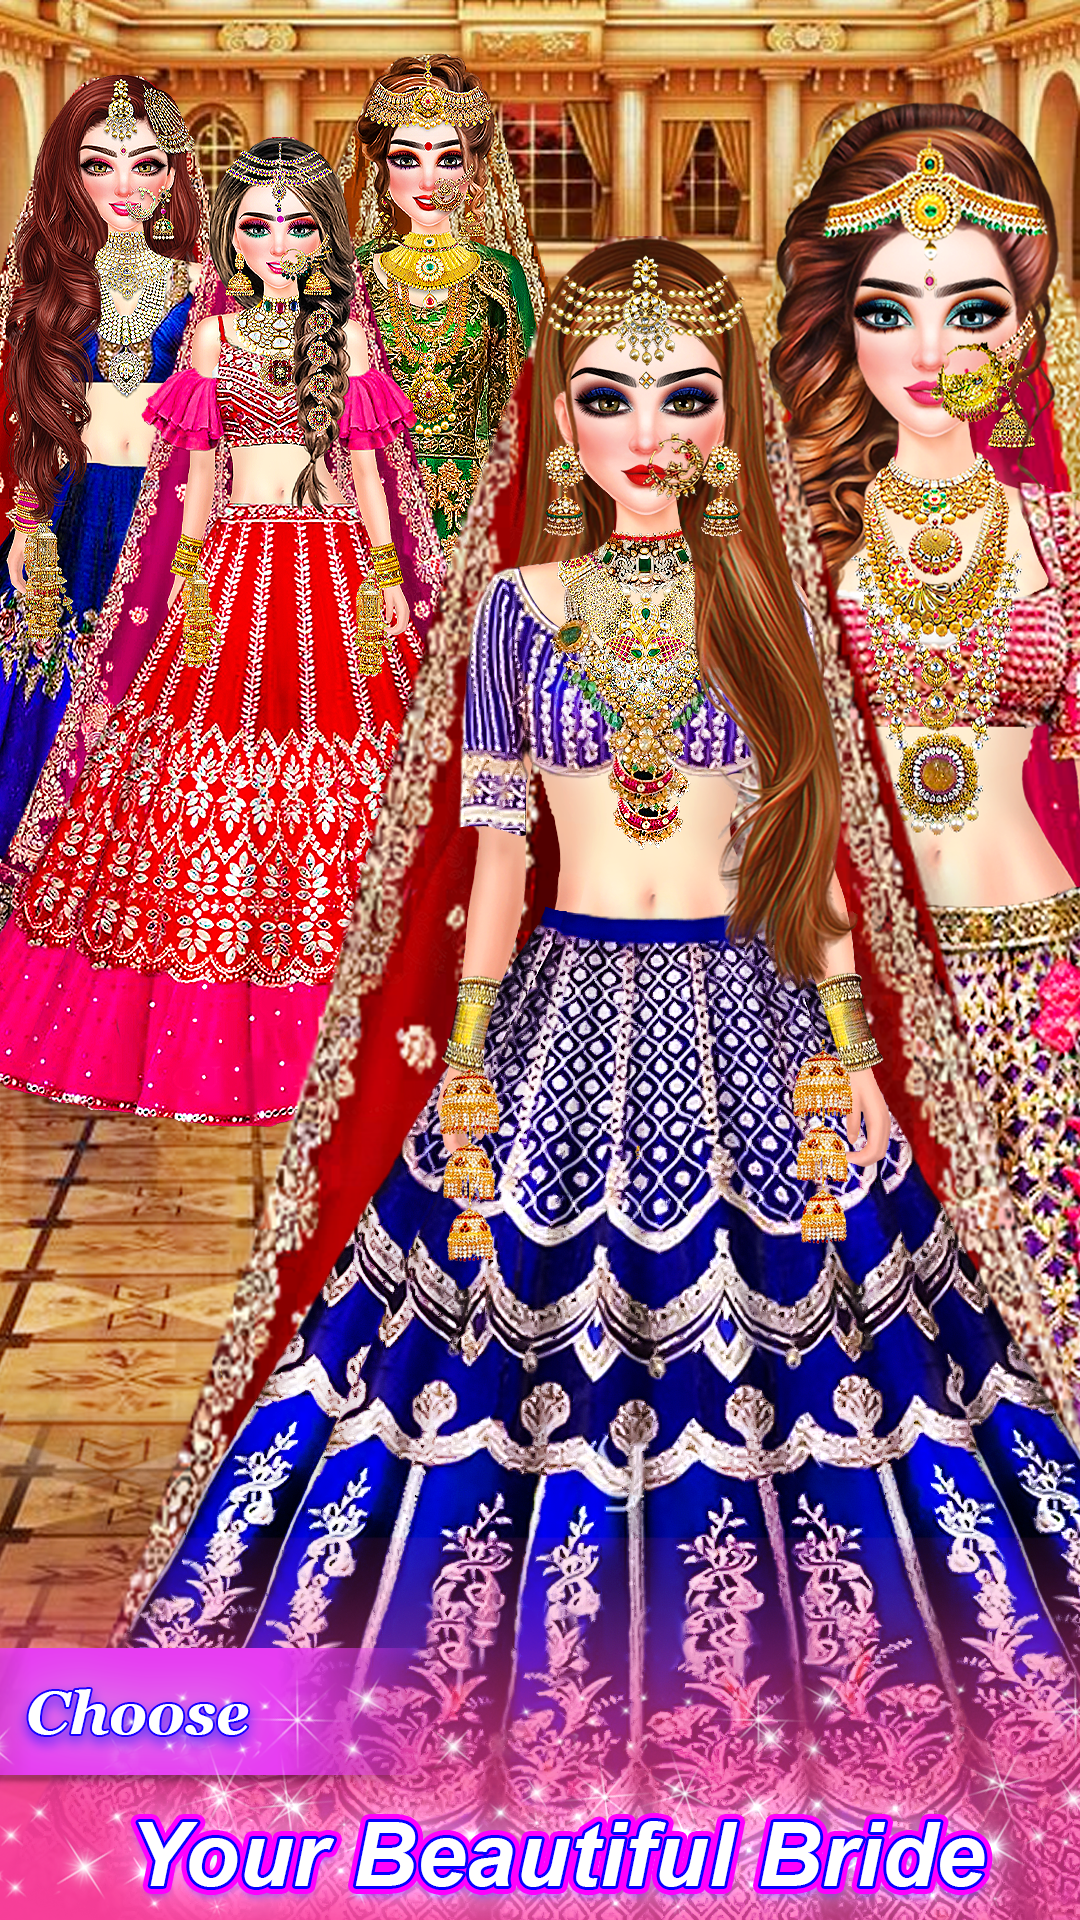 Traditional Royal Indian Wedding game, #facemask, #hairstyle  #arrangemariage, #bridalmakeup-game - YouTube